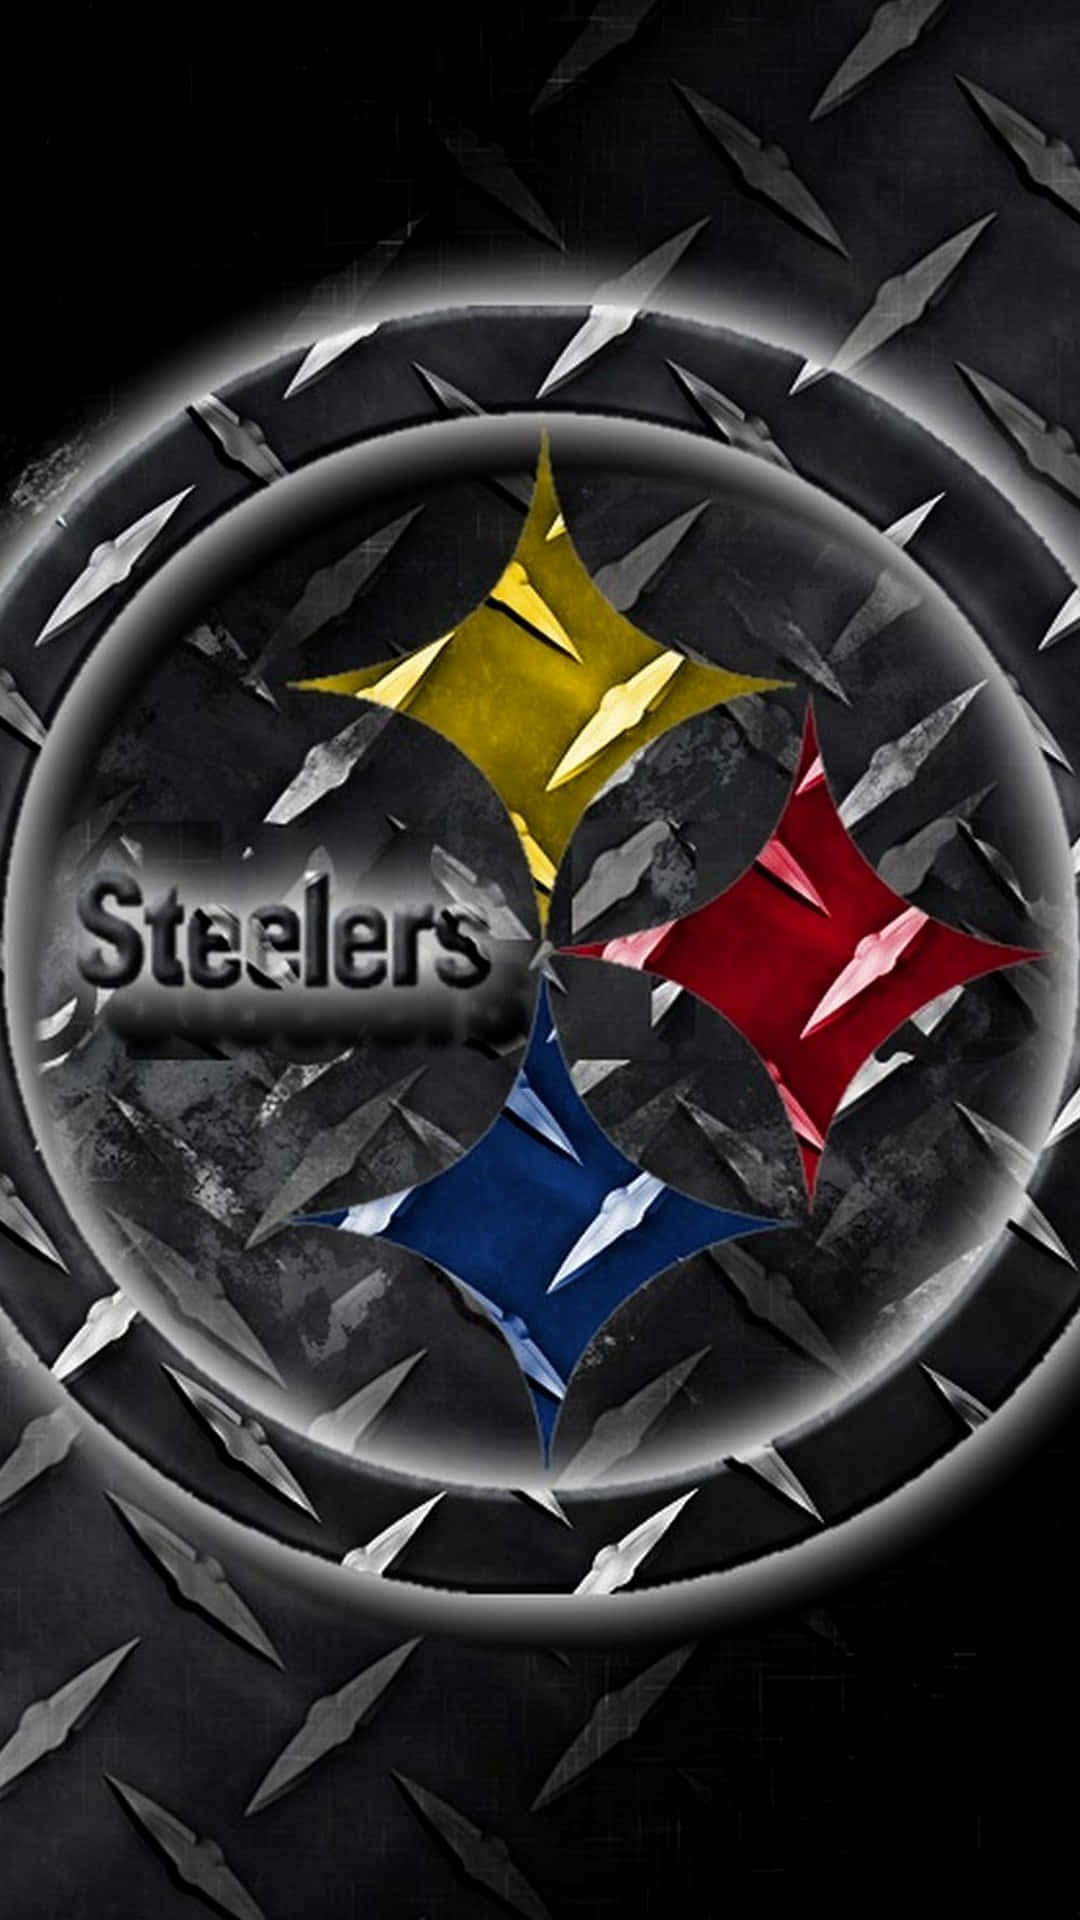 Umiphone Com As Cores E Logotipo Do Time De Futebol Americano Pittsburgh Steelers. Papel de Parede